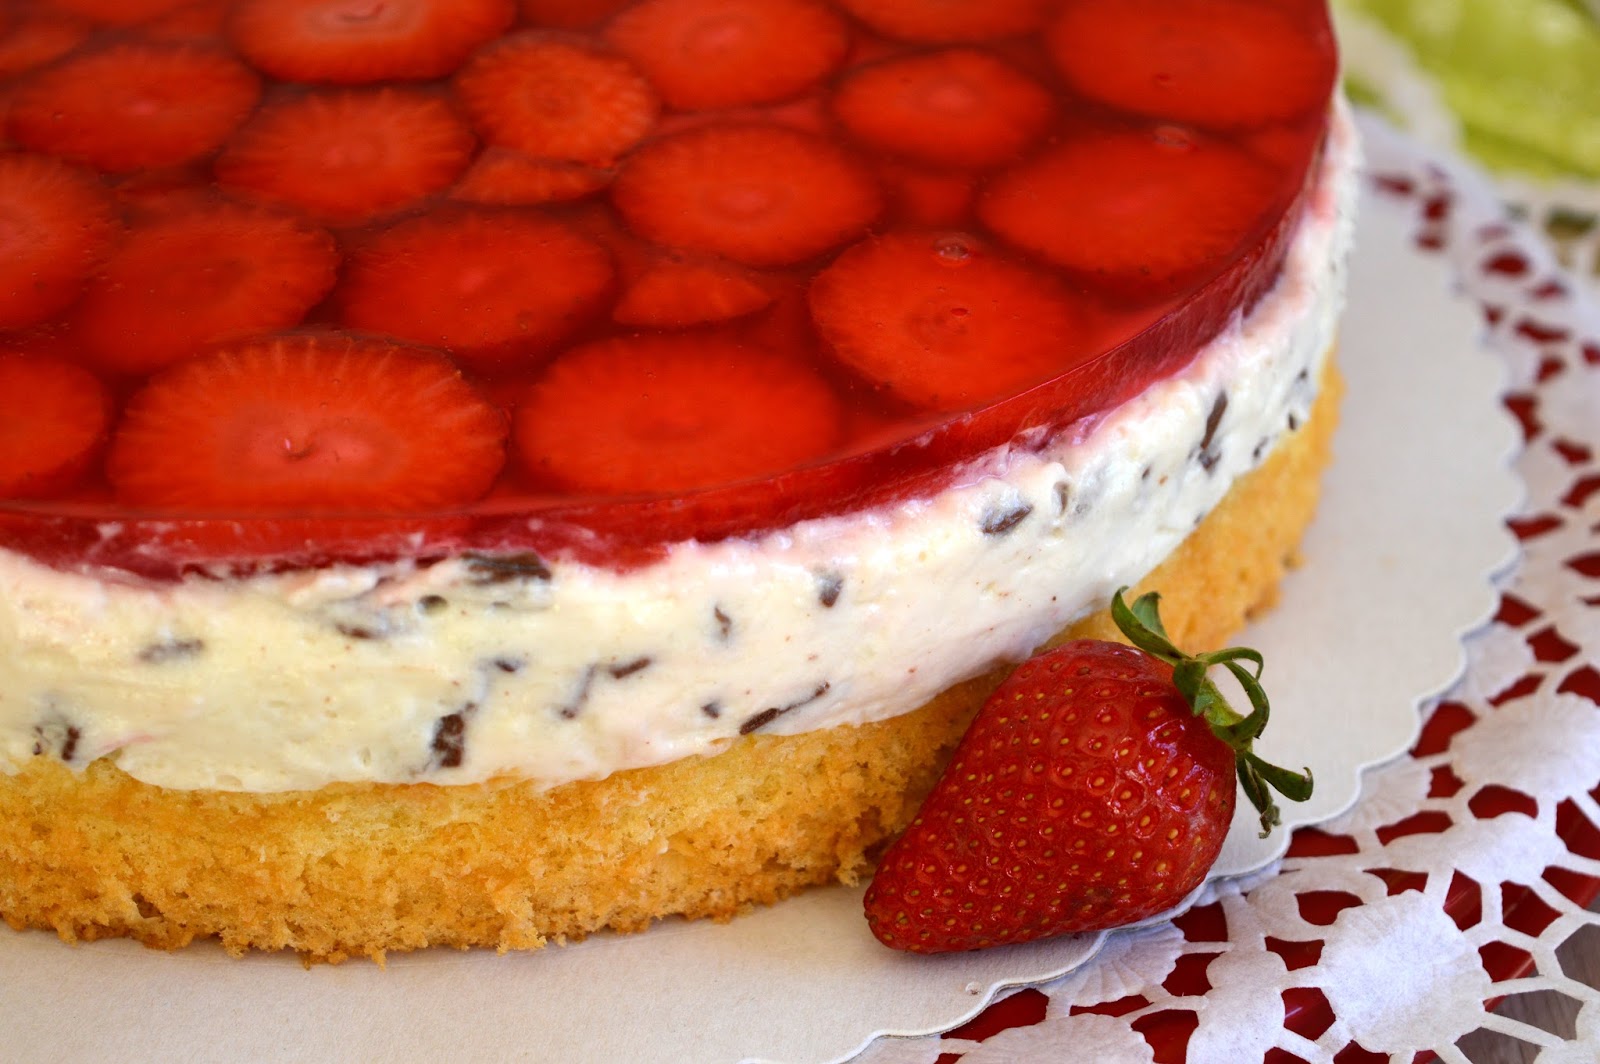 Julias zuckersüße Kuchenwelt: Erdbeer-Stracciatella-Torte